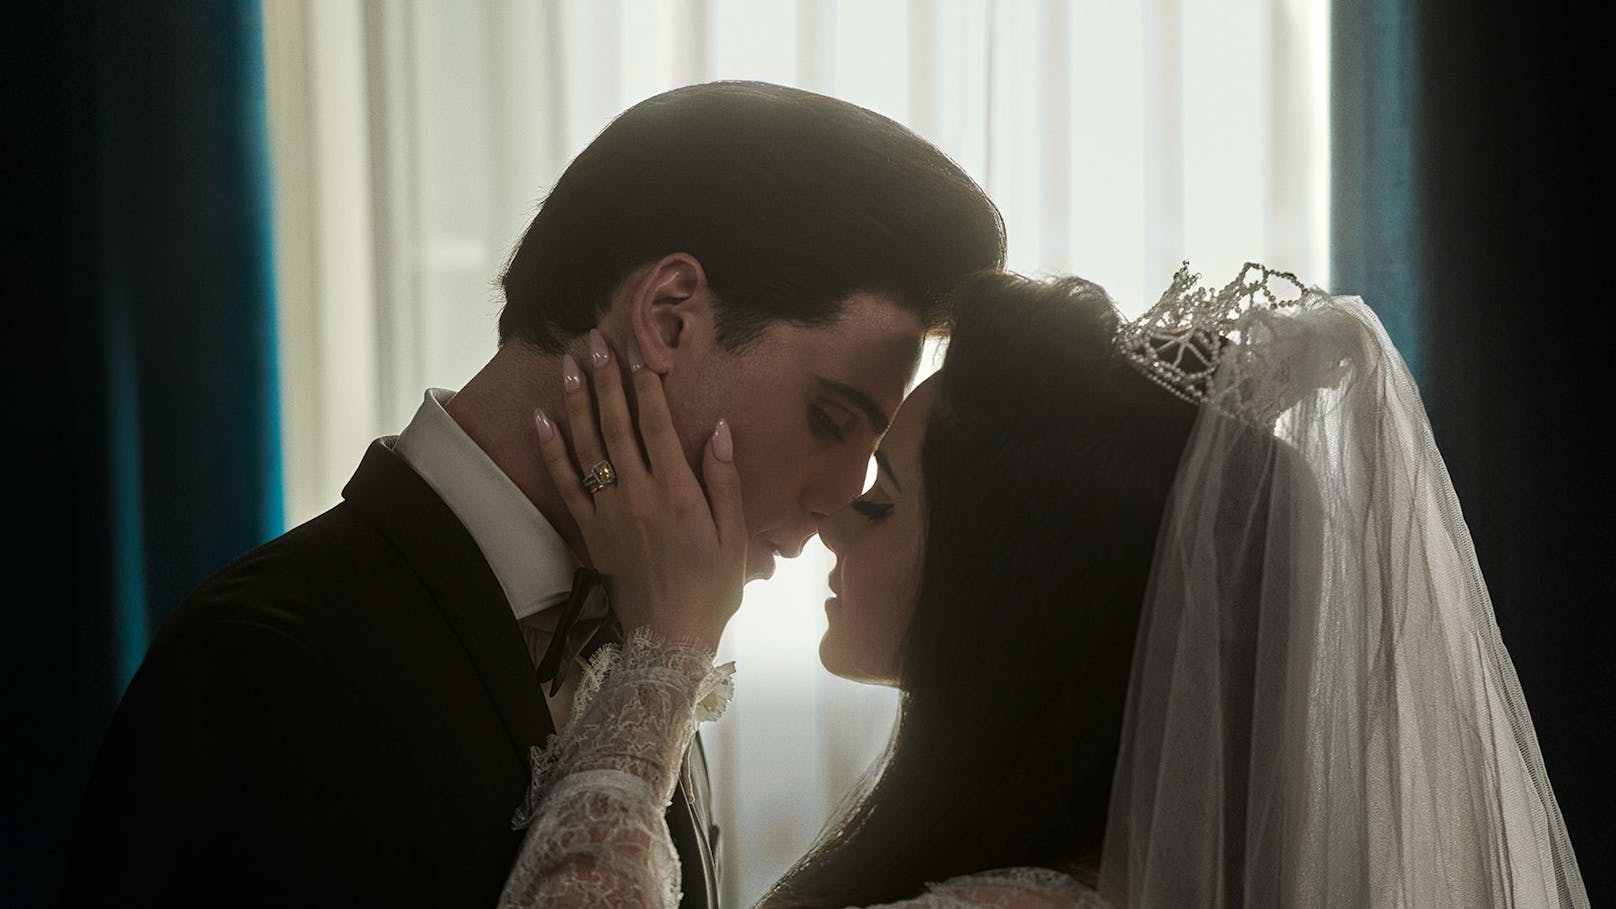 Eine Szene aus dem Film "Priscilla" von Sofia Coppola: Priscilla (Cailee Spaeny) und Elvis presley (Jocob Elordi) am Tag ihrer Hochzeit.